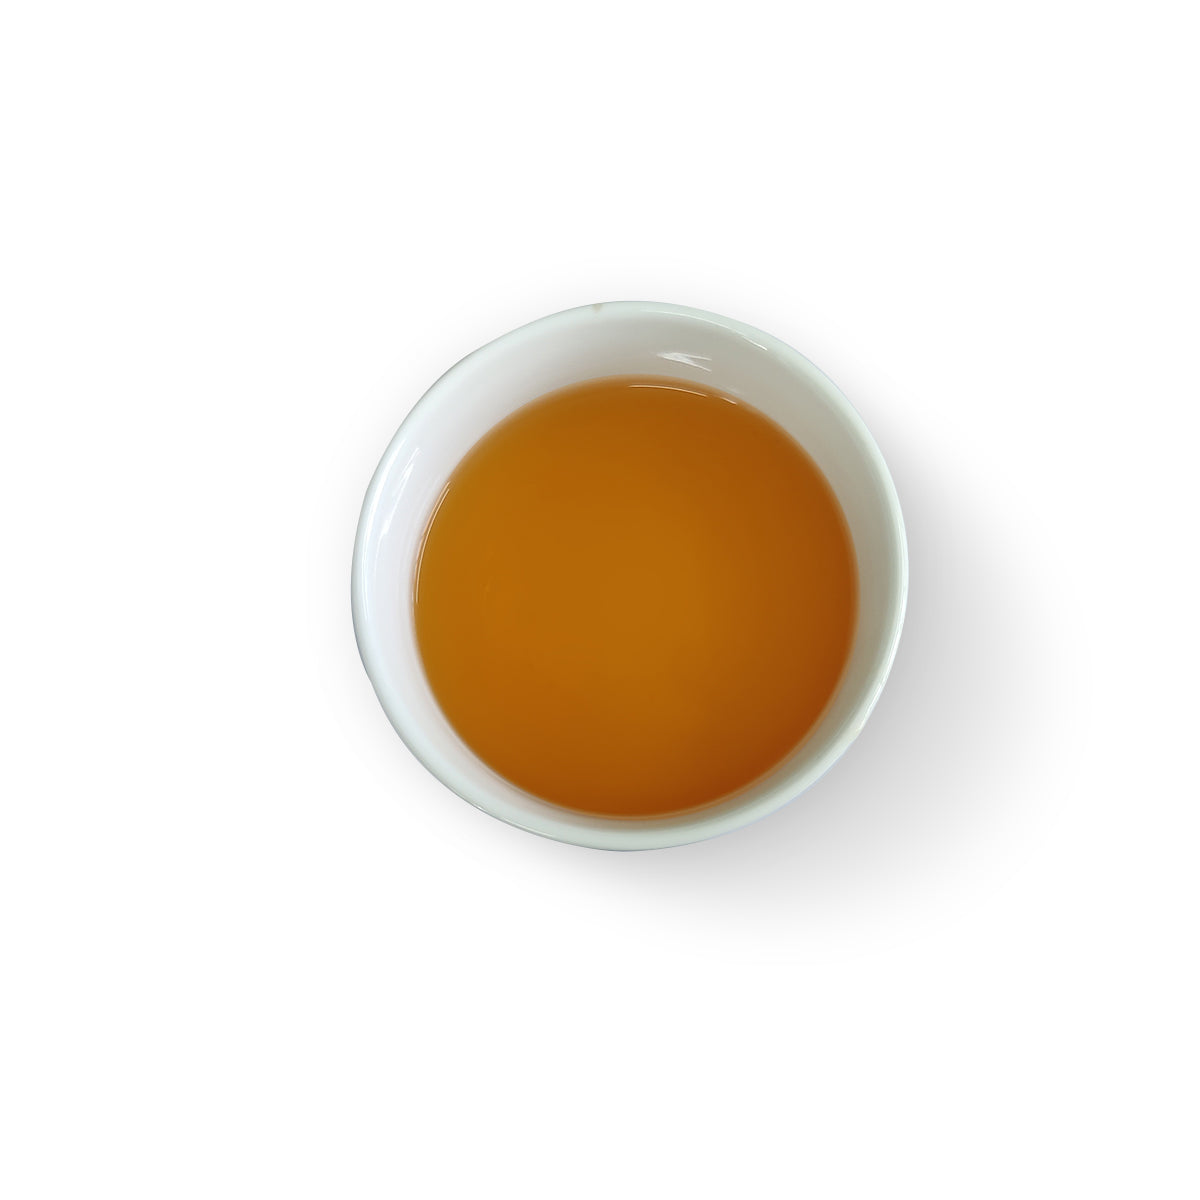 Castleton Summer Black Tea 2022 – 50gm ( Pack of 2)